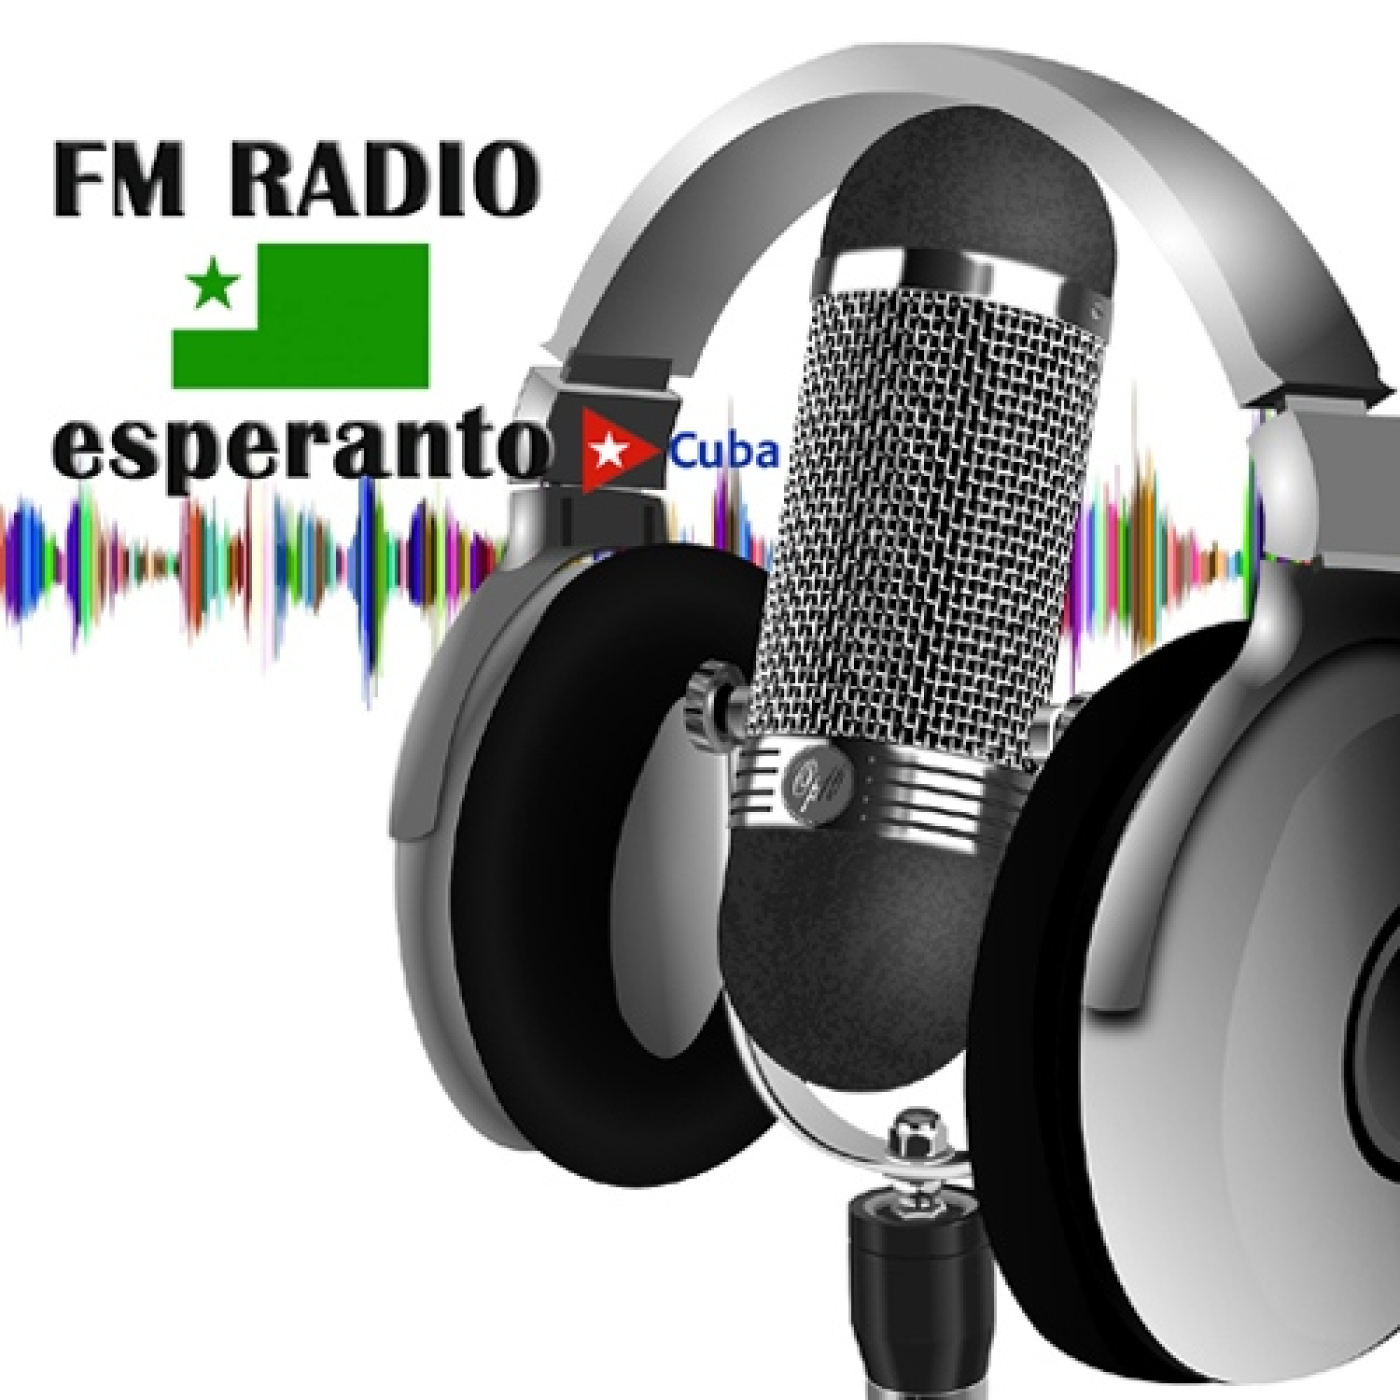 FM Radio Esperanto